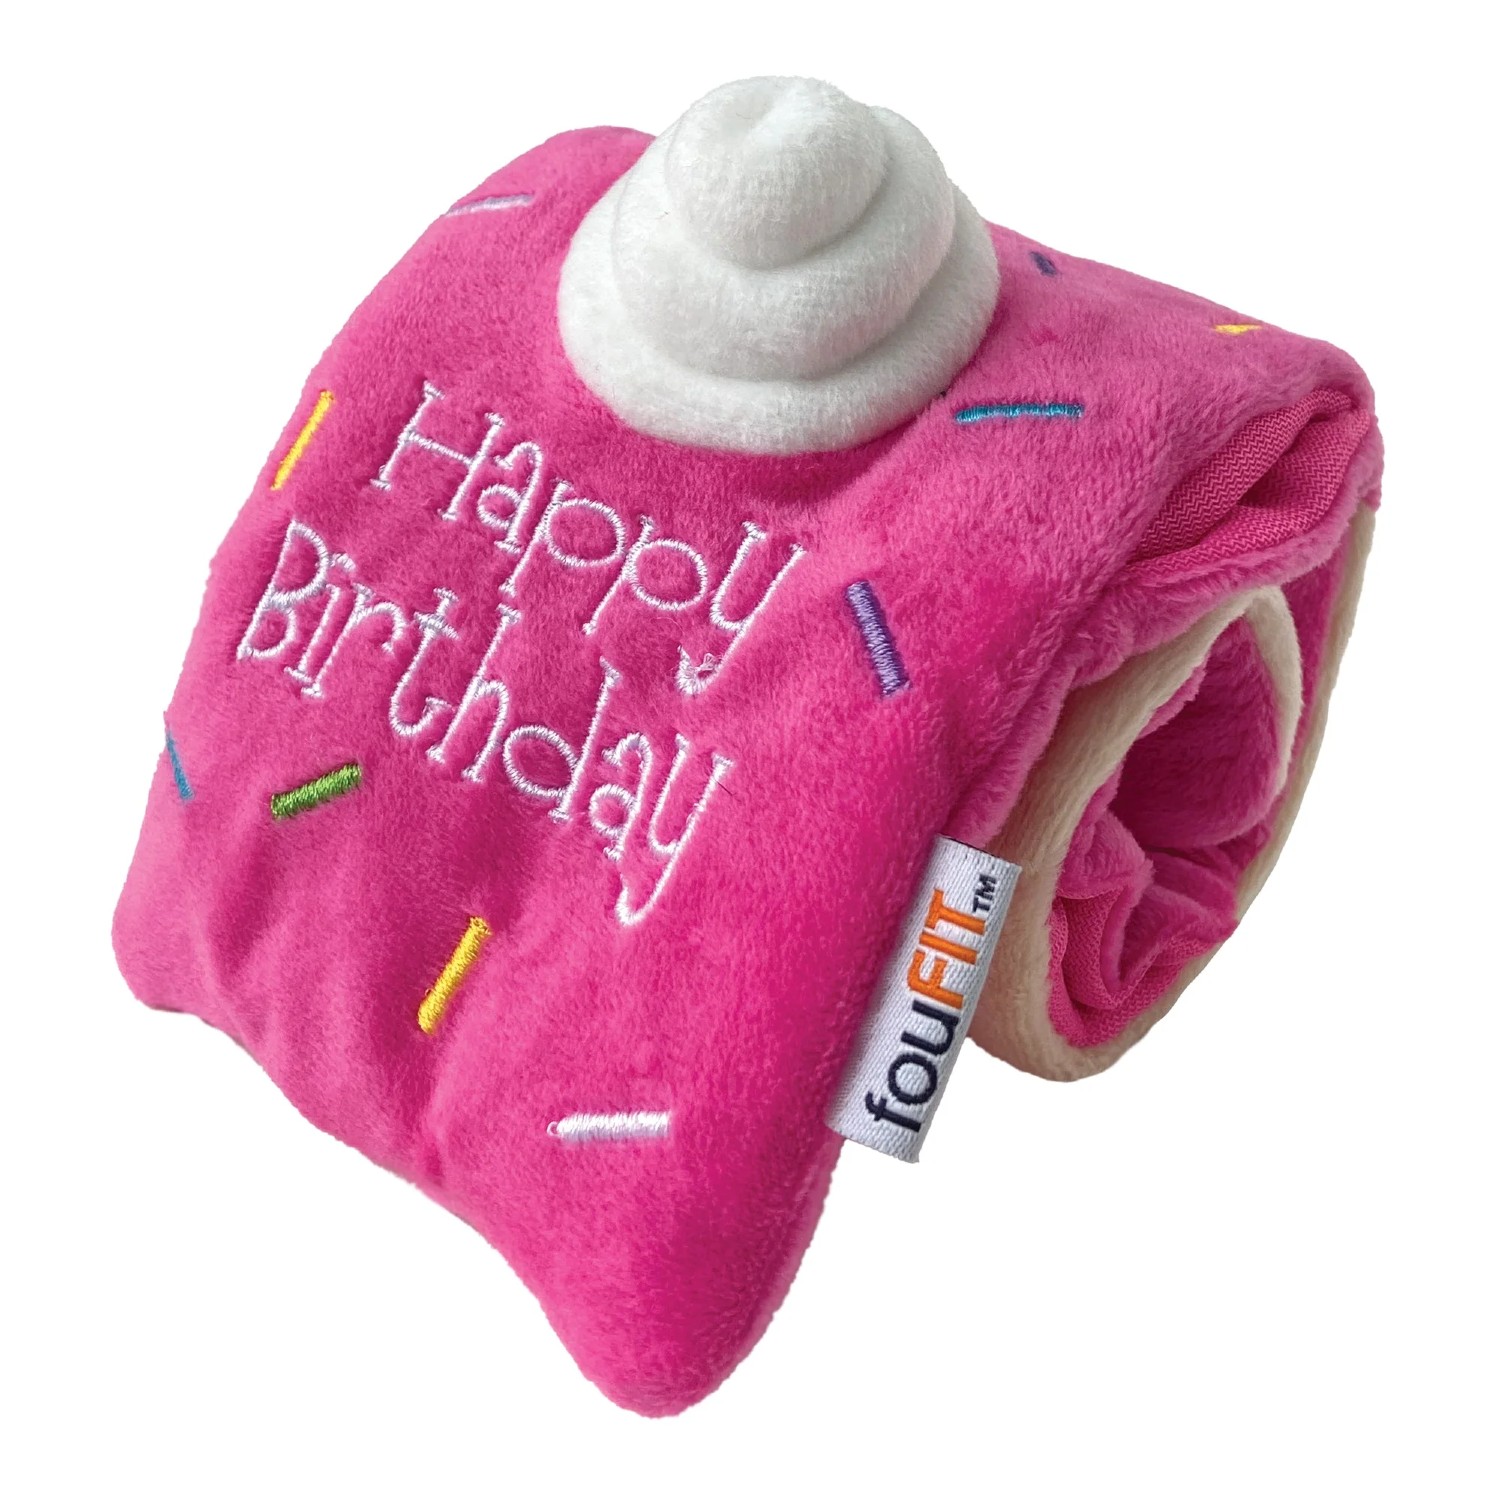 foufou Dog fouFIT Hide 'n Seek Birthday Roll Cake Dog Toy - Pink